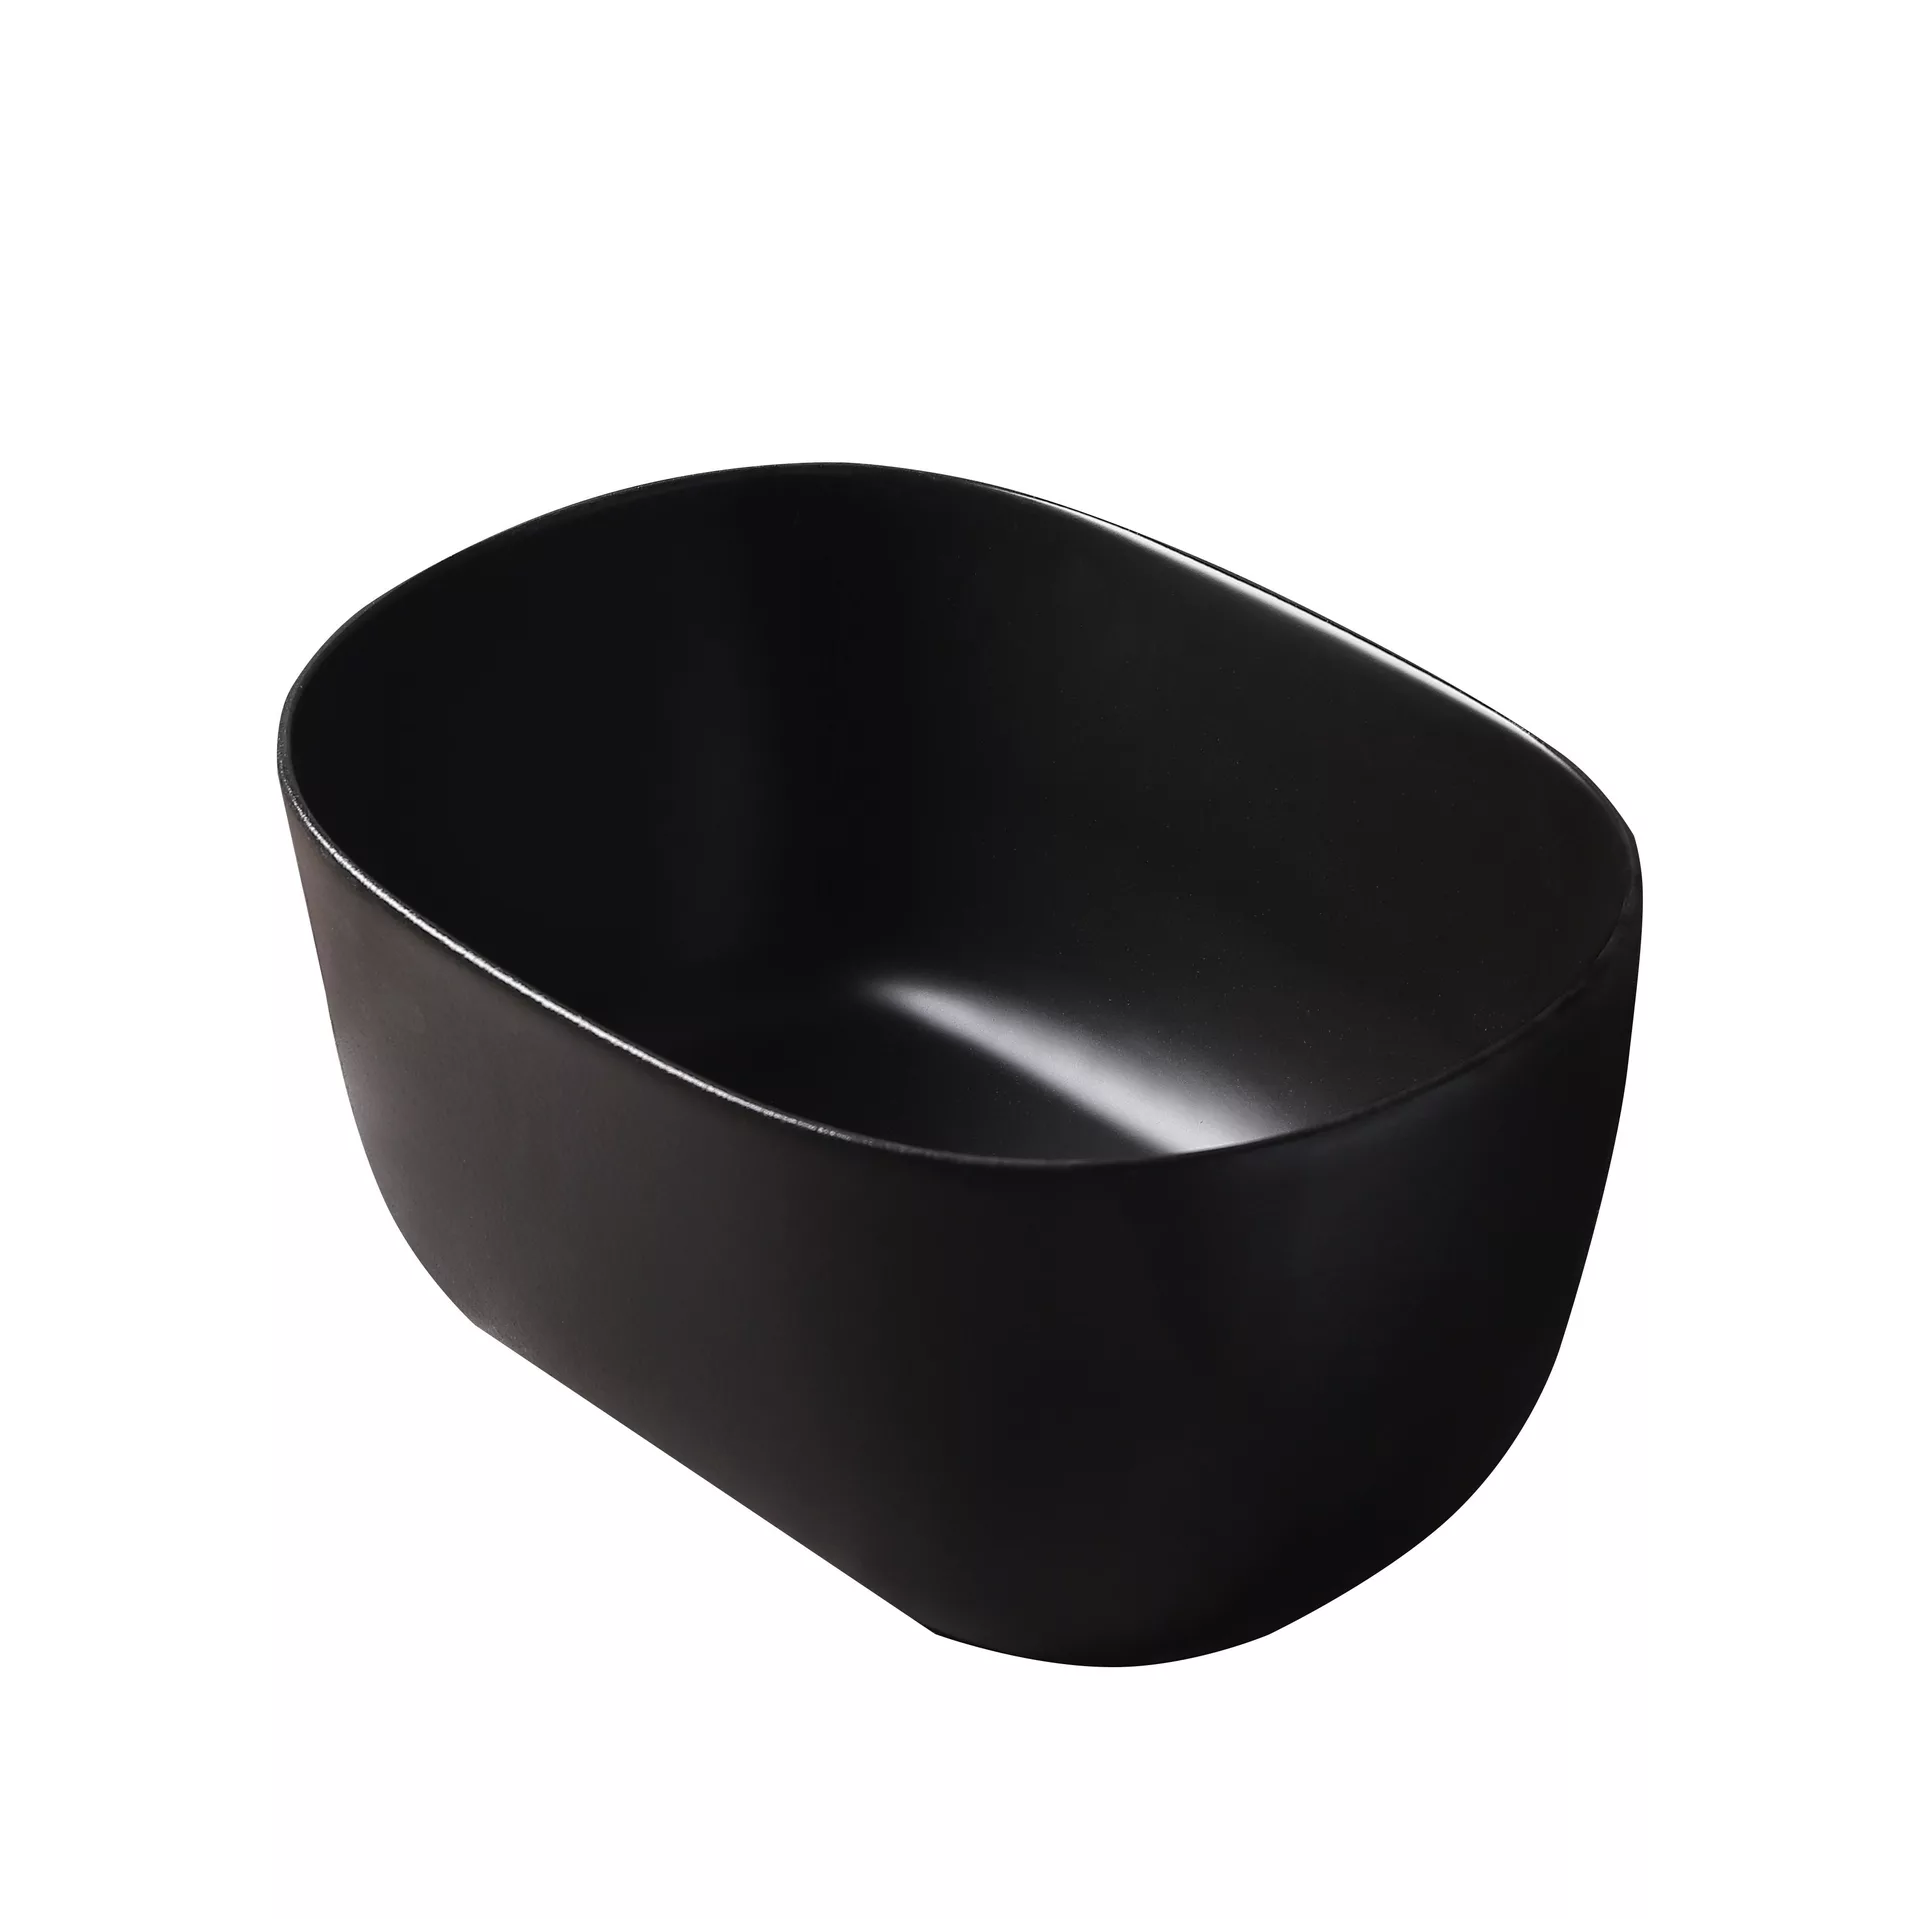 Накладная черная раковина для ванной GiD N9302bg овальная керамческая расческа массажная с натур щетиной овальная черная